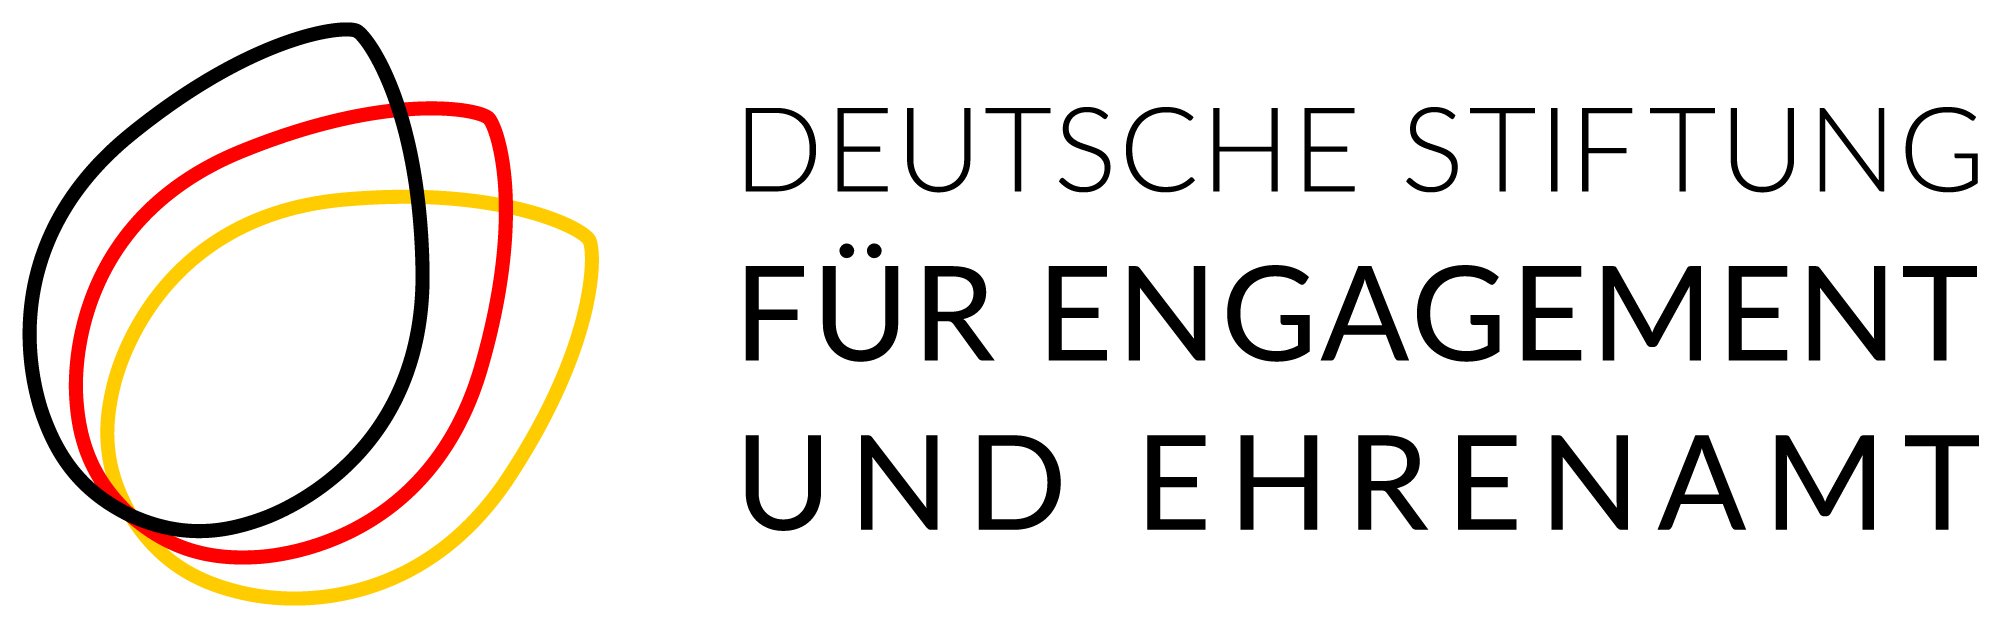 logo-deutsche-stiftung-fuer-engagement-und-ehrenamt-data